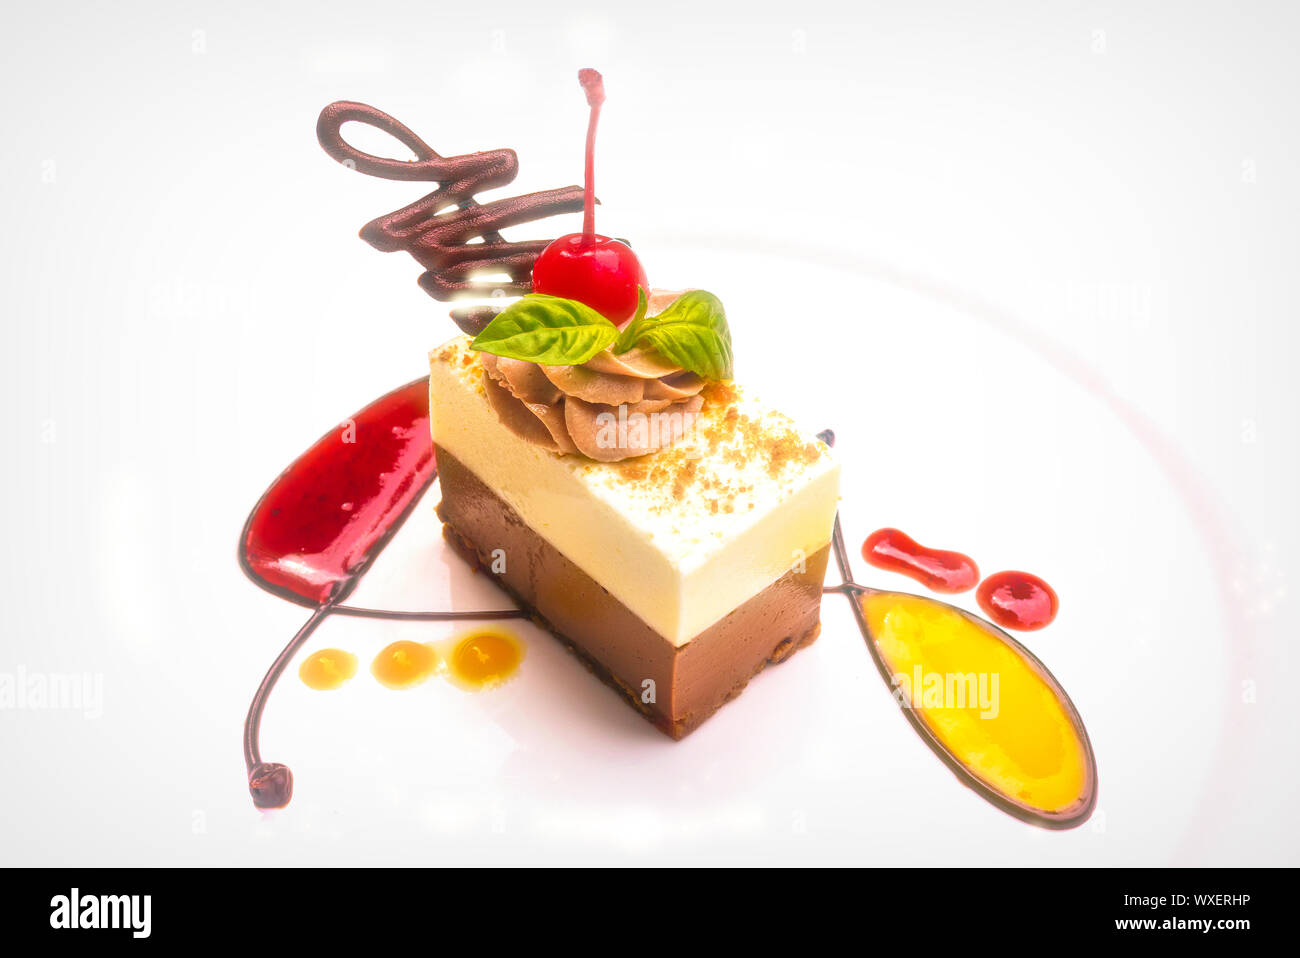 Eine bunte Dessert auf einem high key weiße Platte Hintergrund. Elegante weiße und dunkle Schokolade Torte mit frischem Obst Coulis in einer künstlerischen Darstellung. Stockfoto